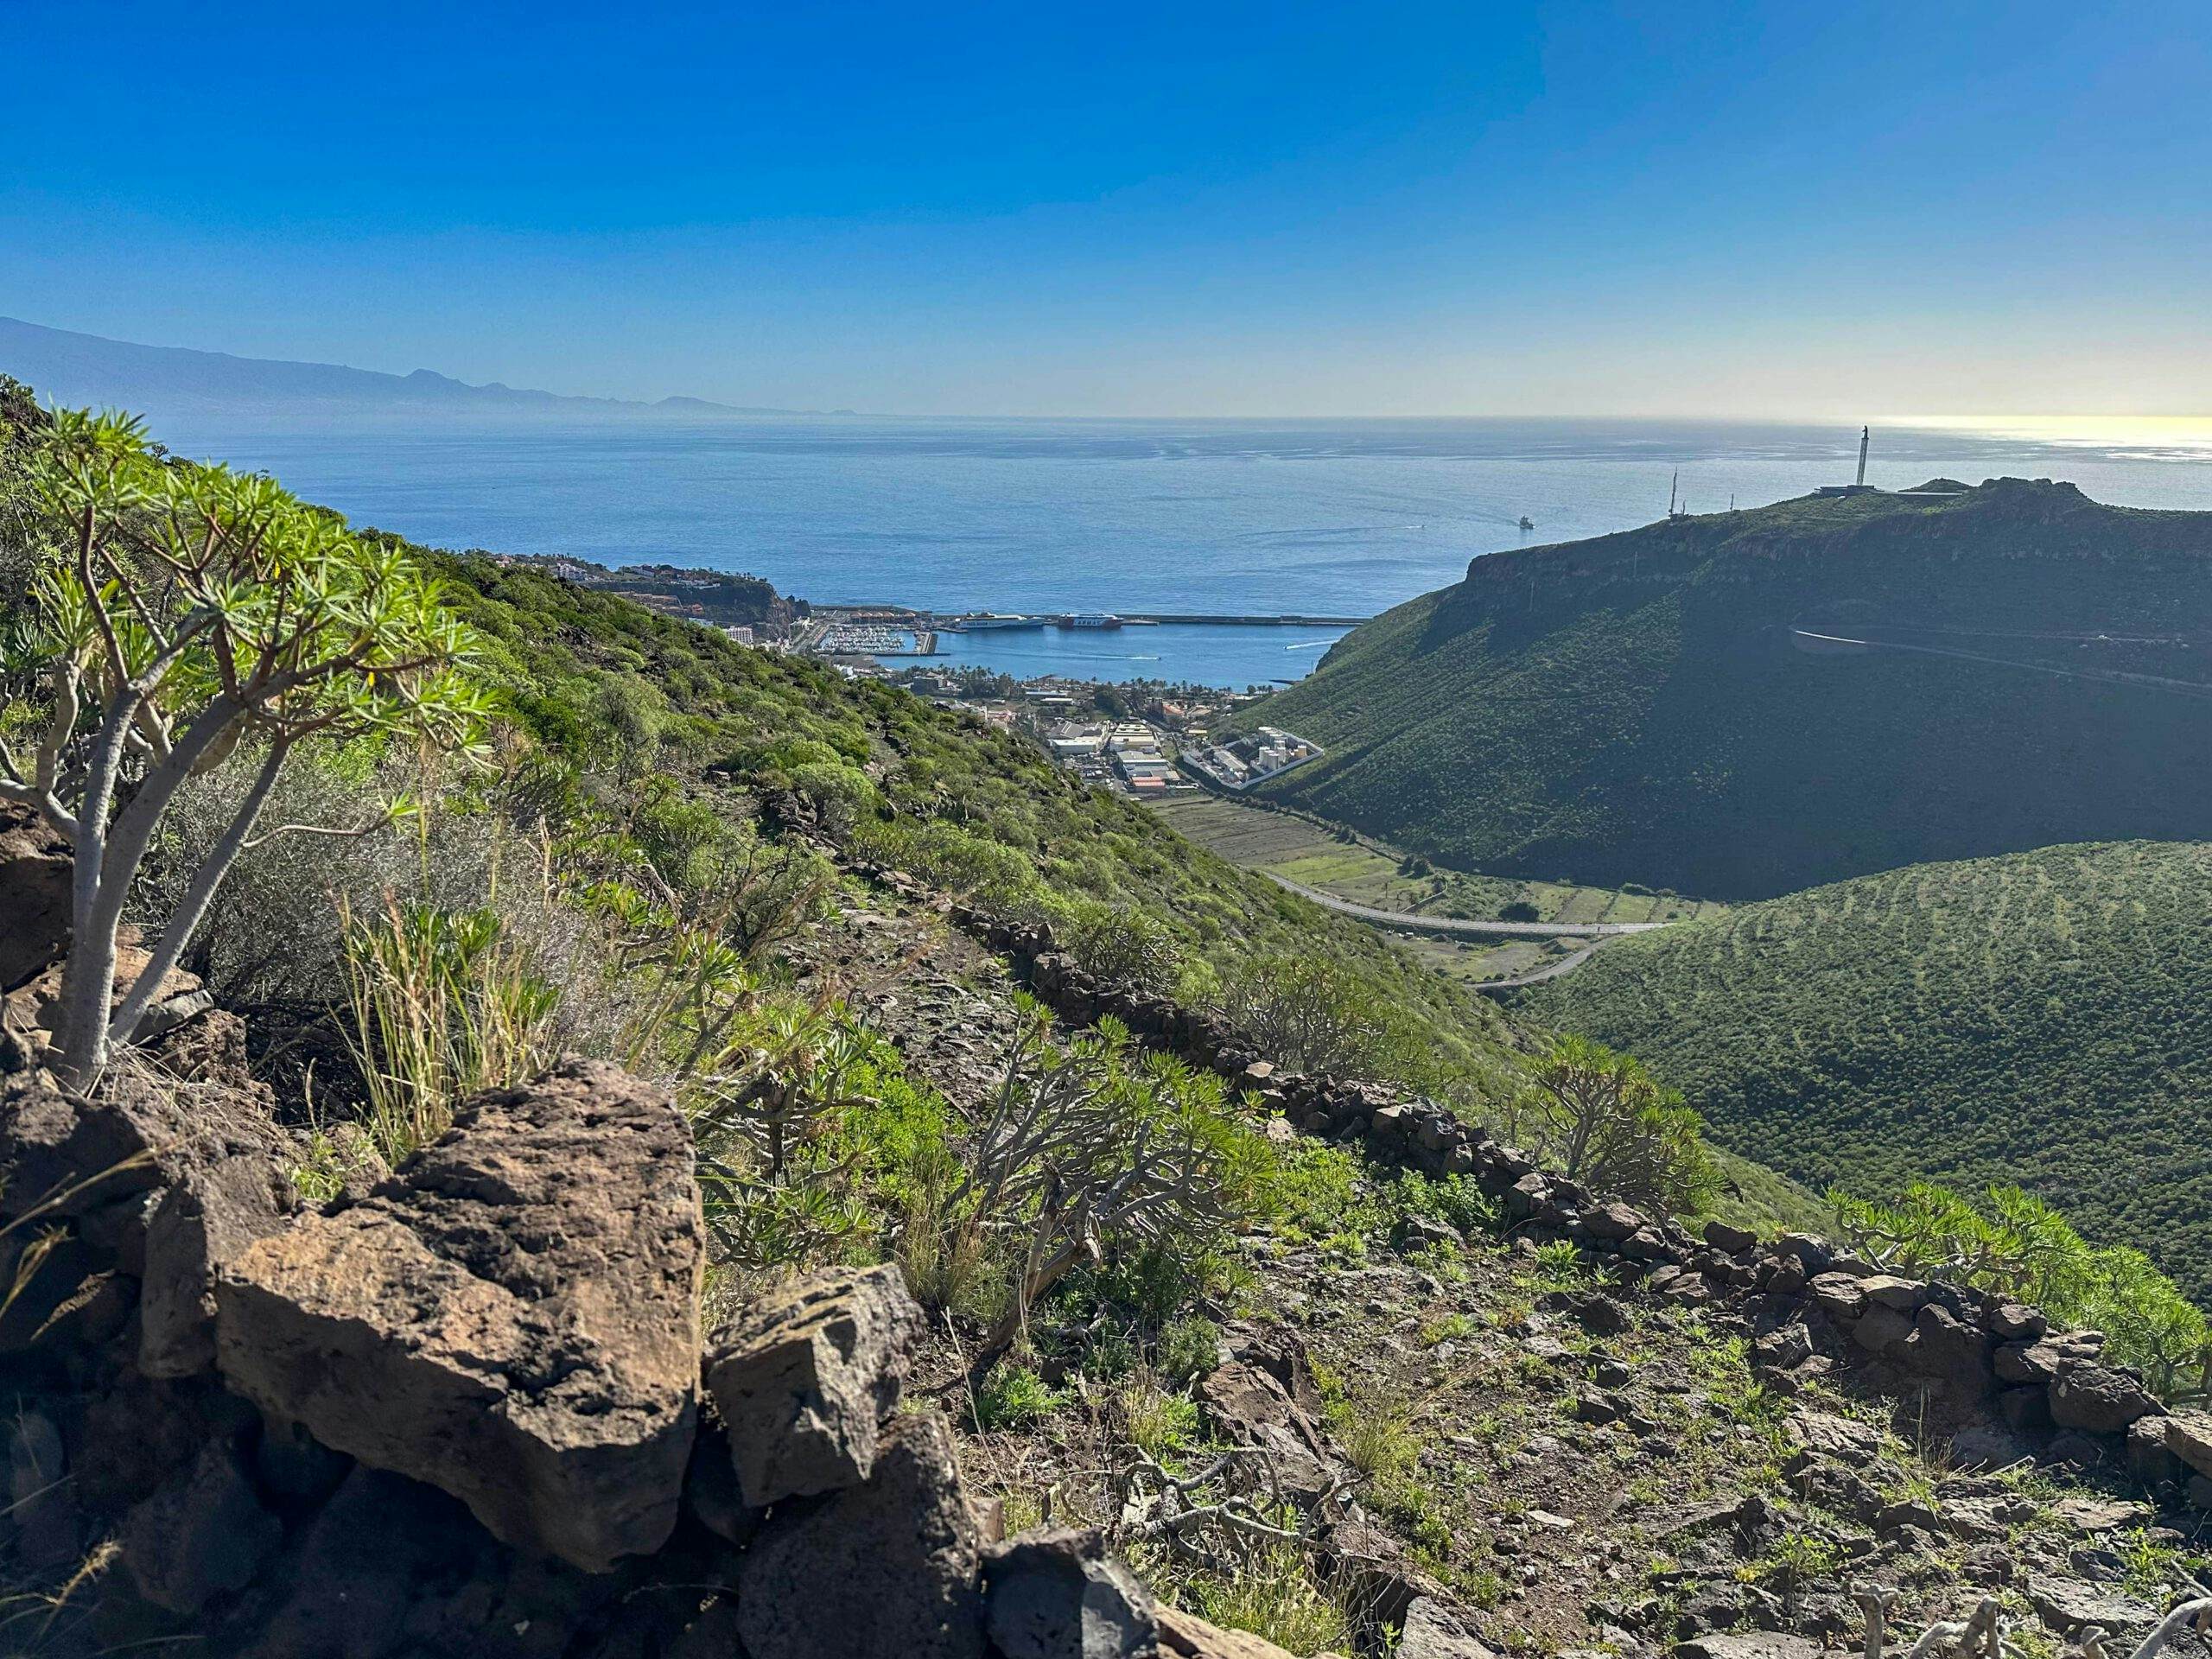 Wandern auf dem Camino mit Blick aus der Höhe auf San Sebastian mit Hafen und Teneriffa